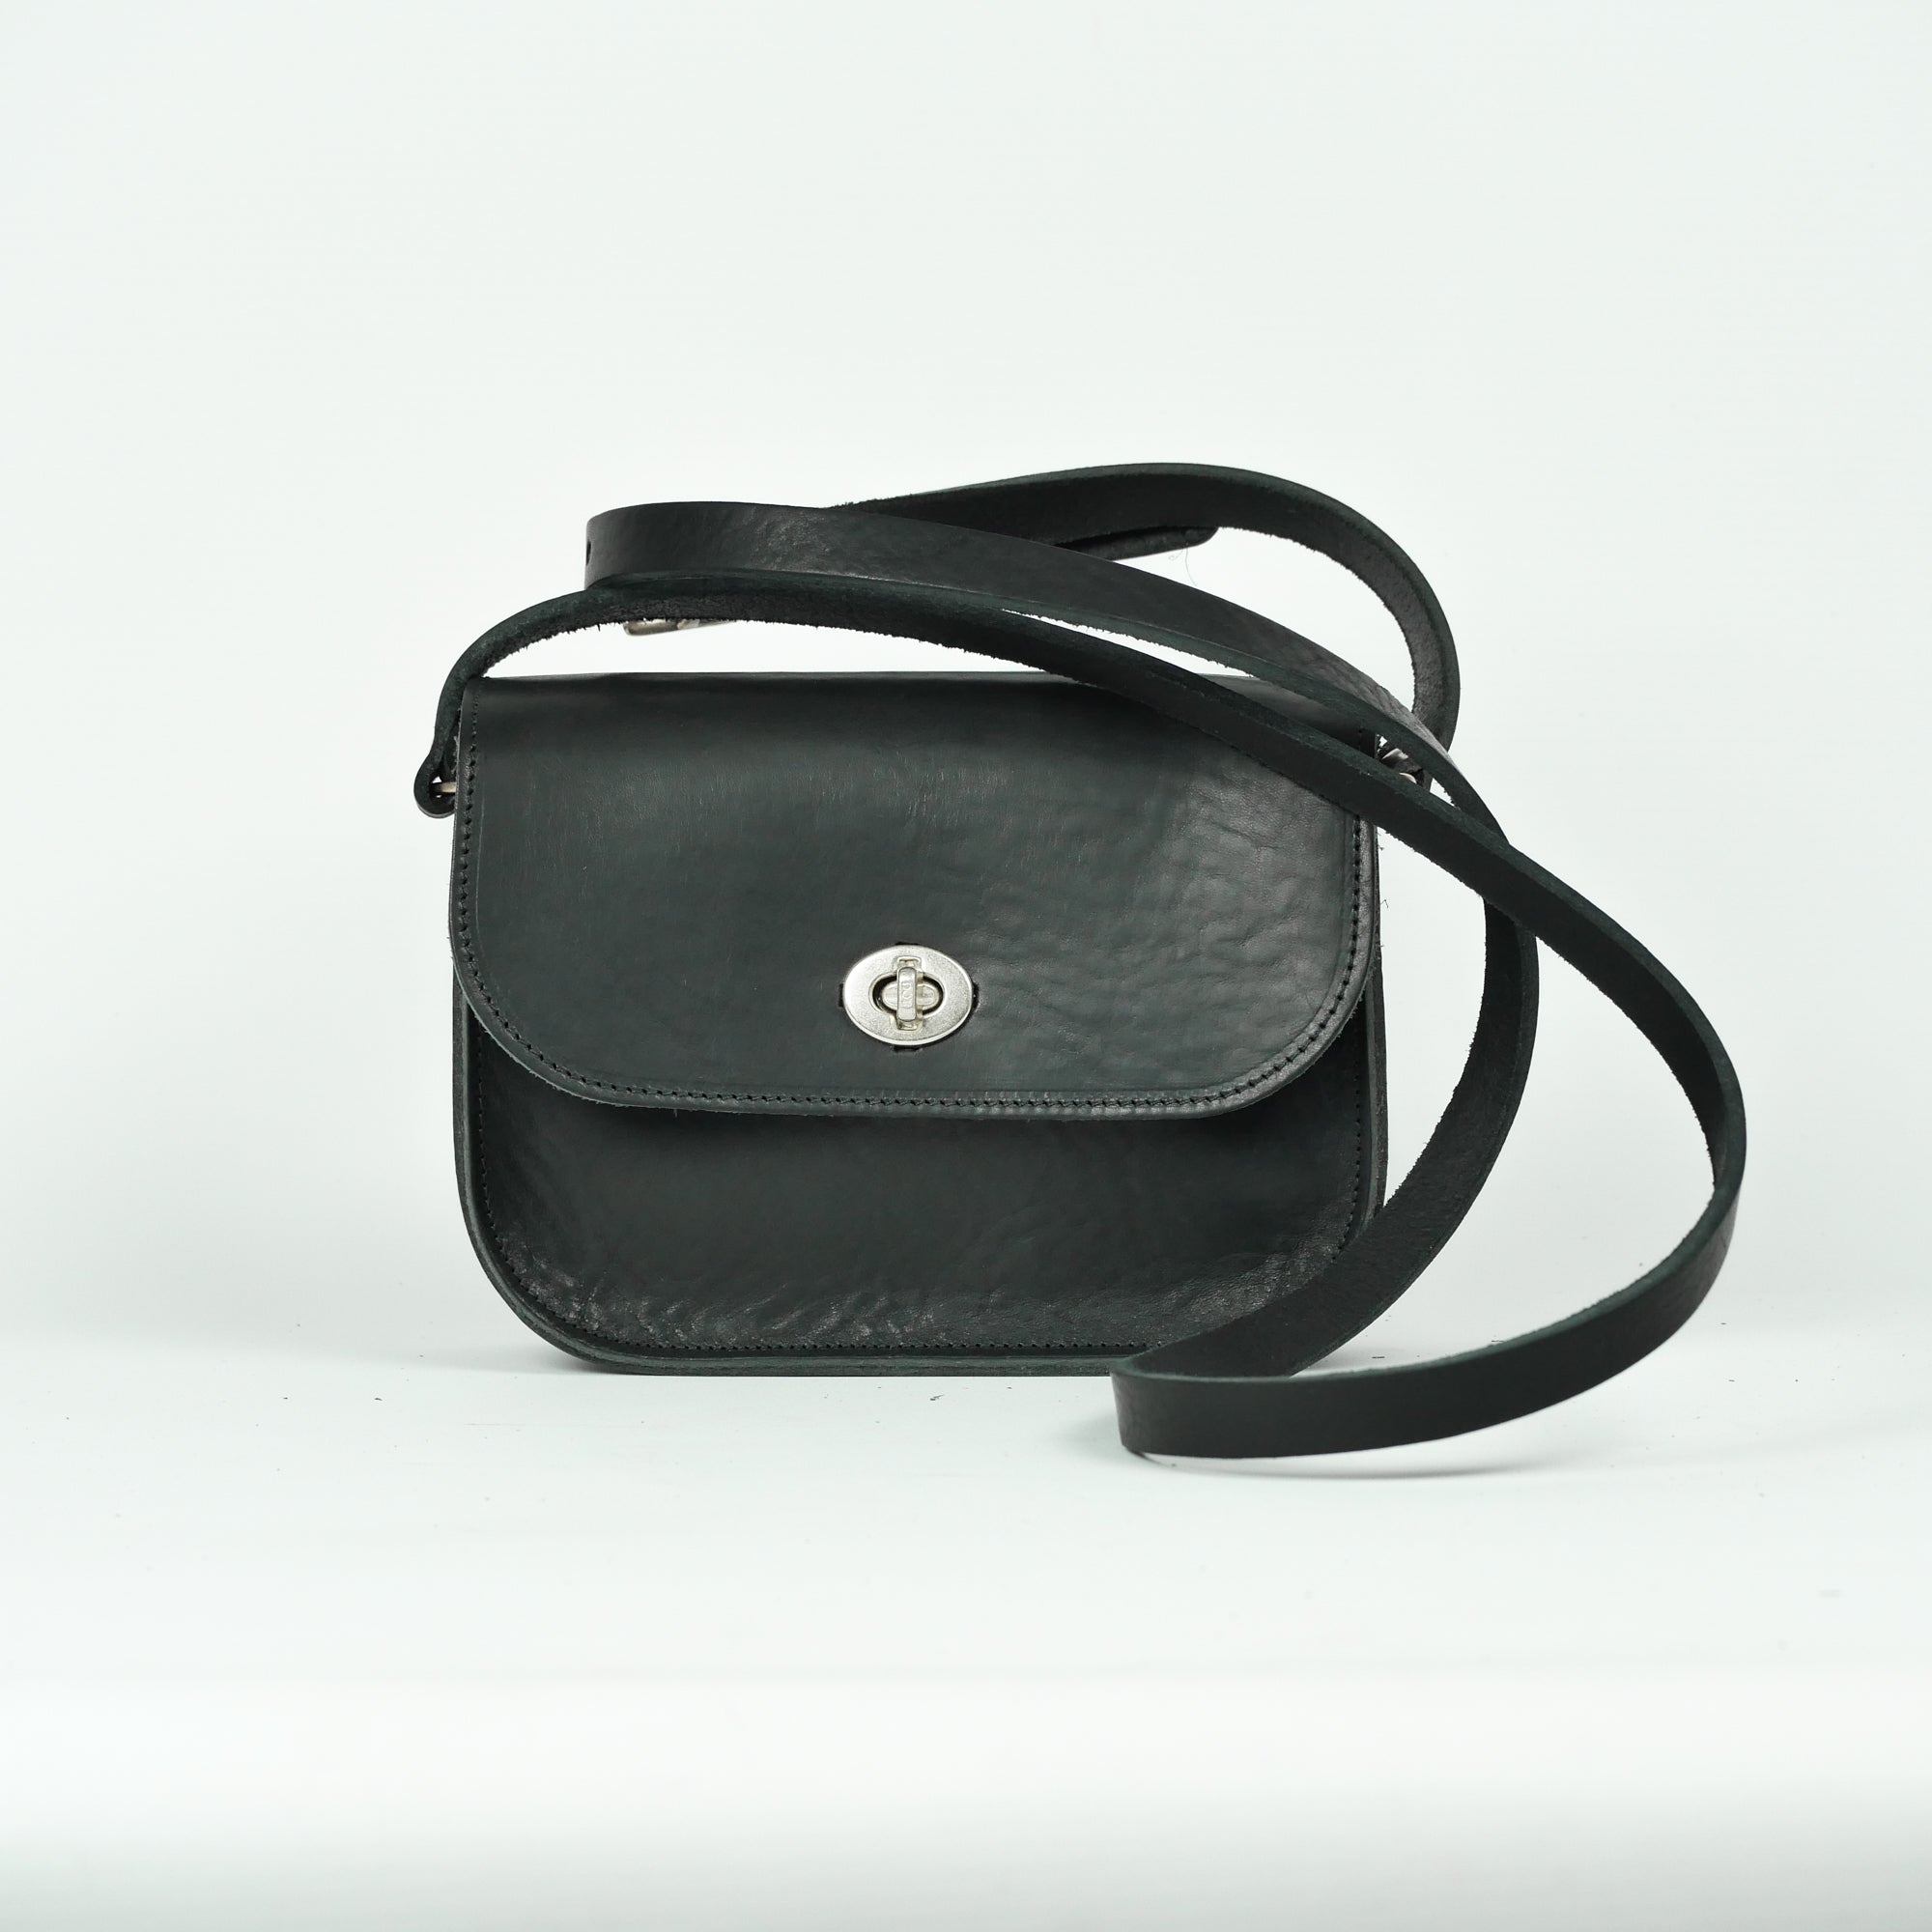 Missouri Black Leather Shoulder Bag